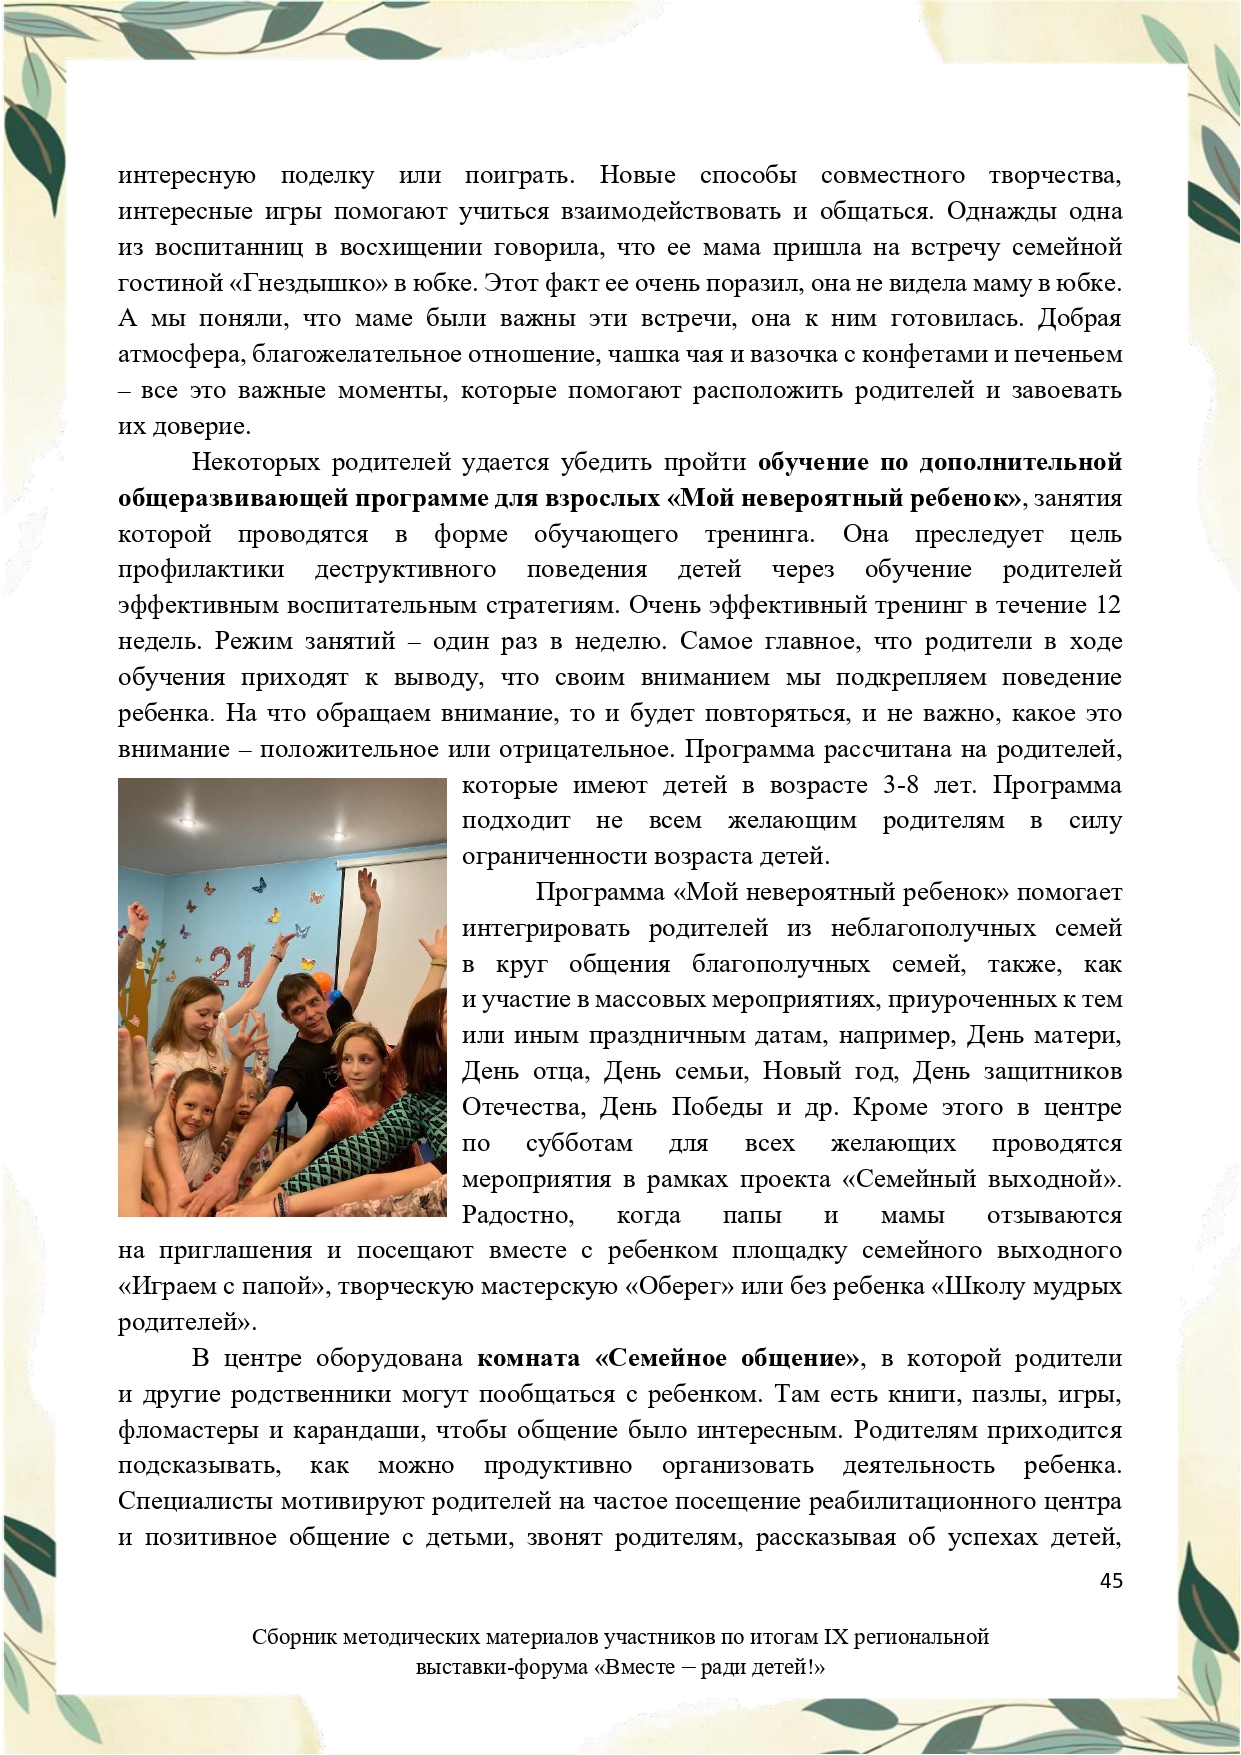 Sbornik_metodicheskikh_materialov_uchastnikov_IX_regionalnoy_vystavki-foruma_Vmeste__radi_detey_33__2023_page-0045